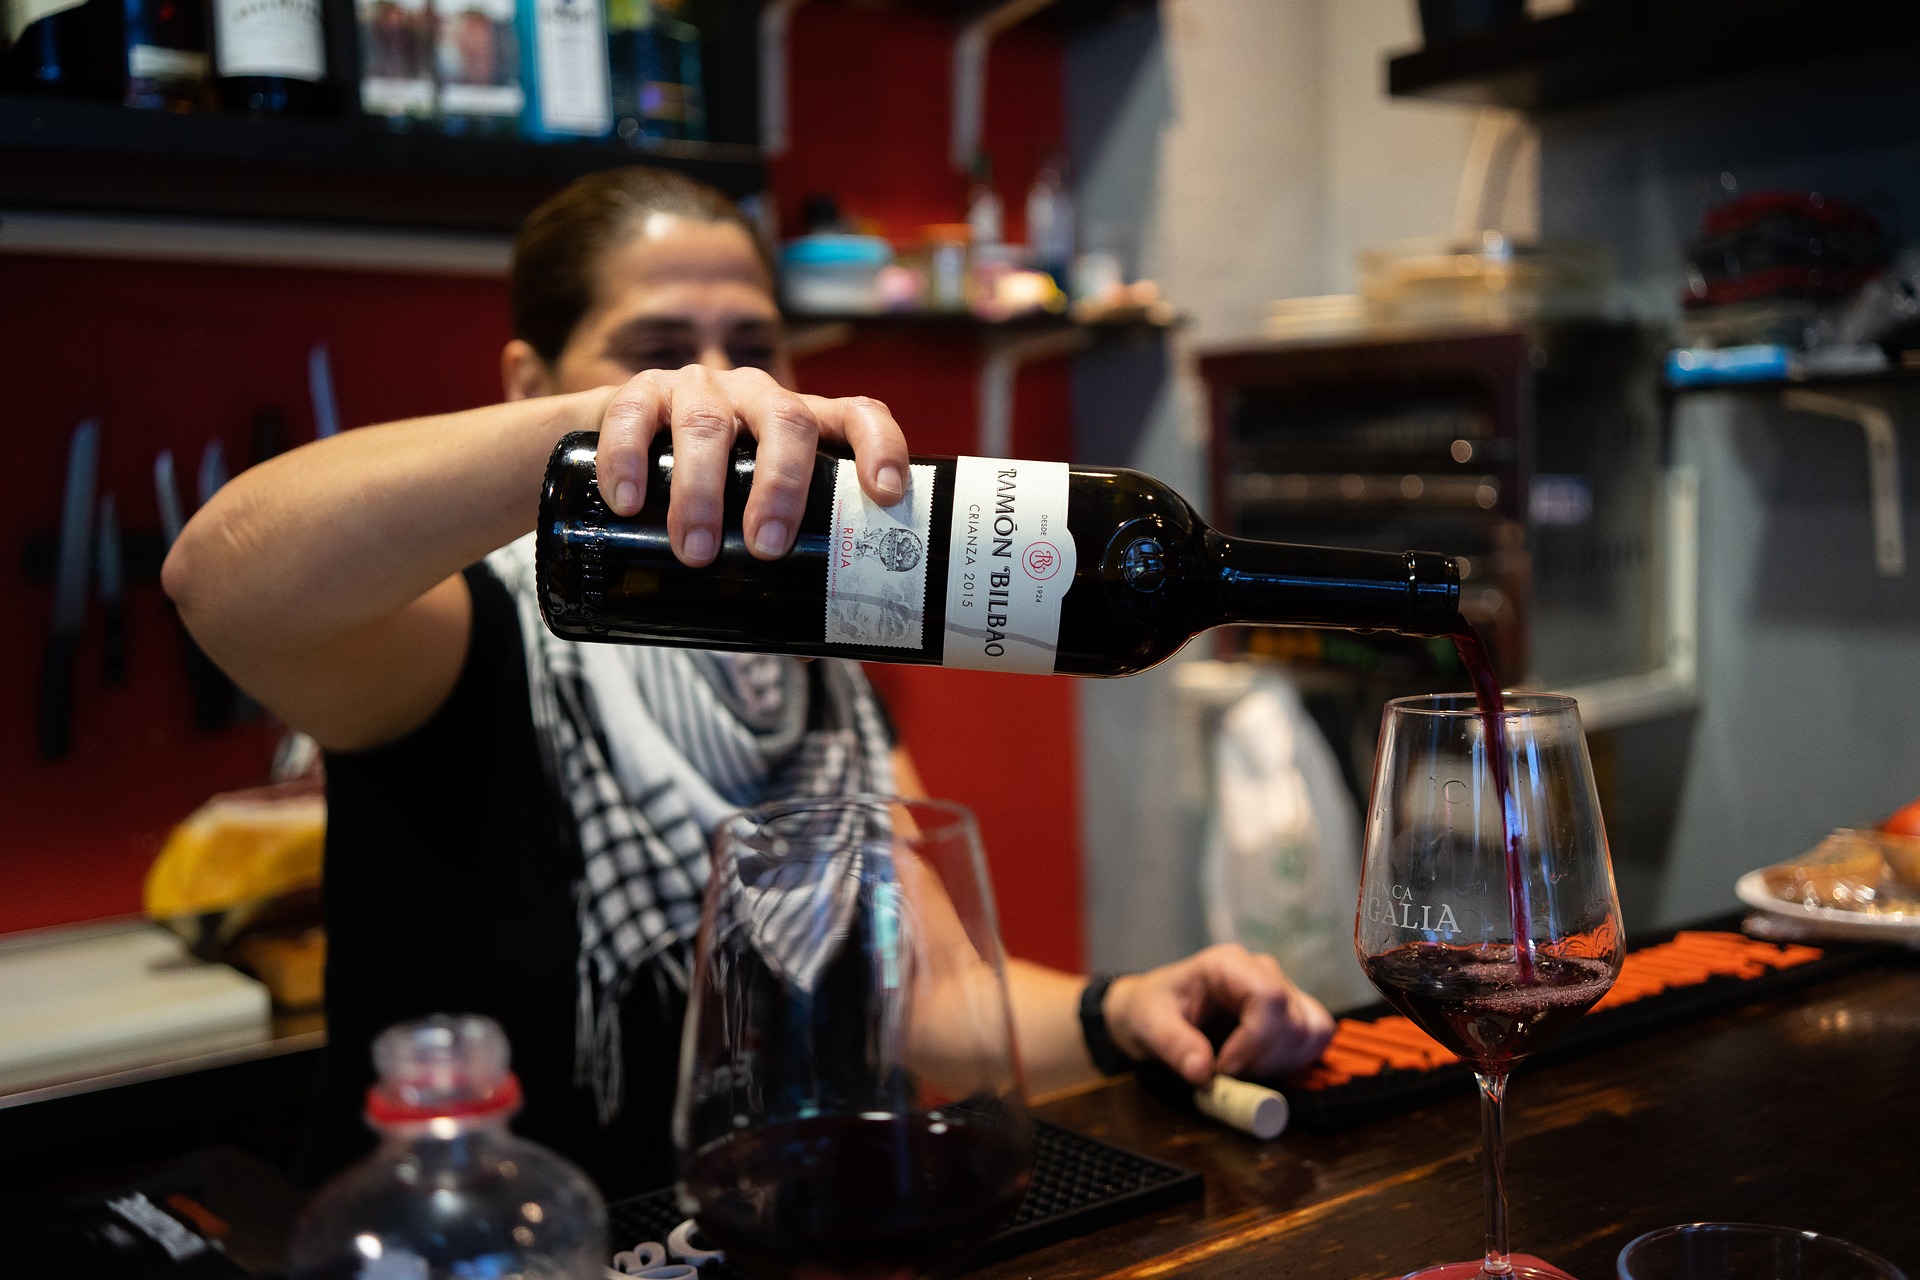 Rioja wijn is de beroemdste Spaanse wijnsoort